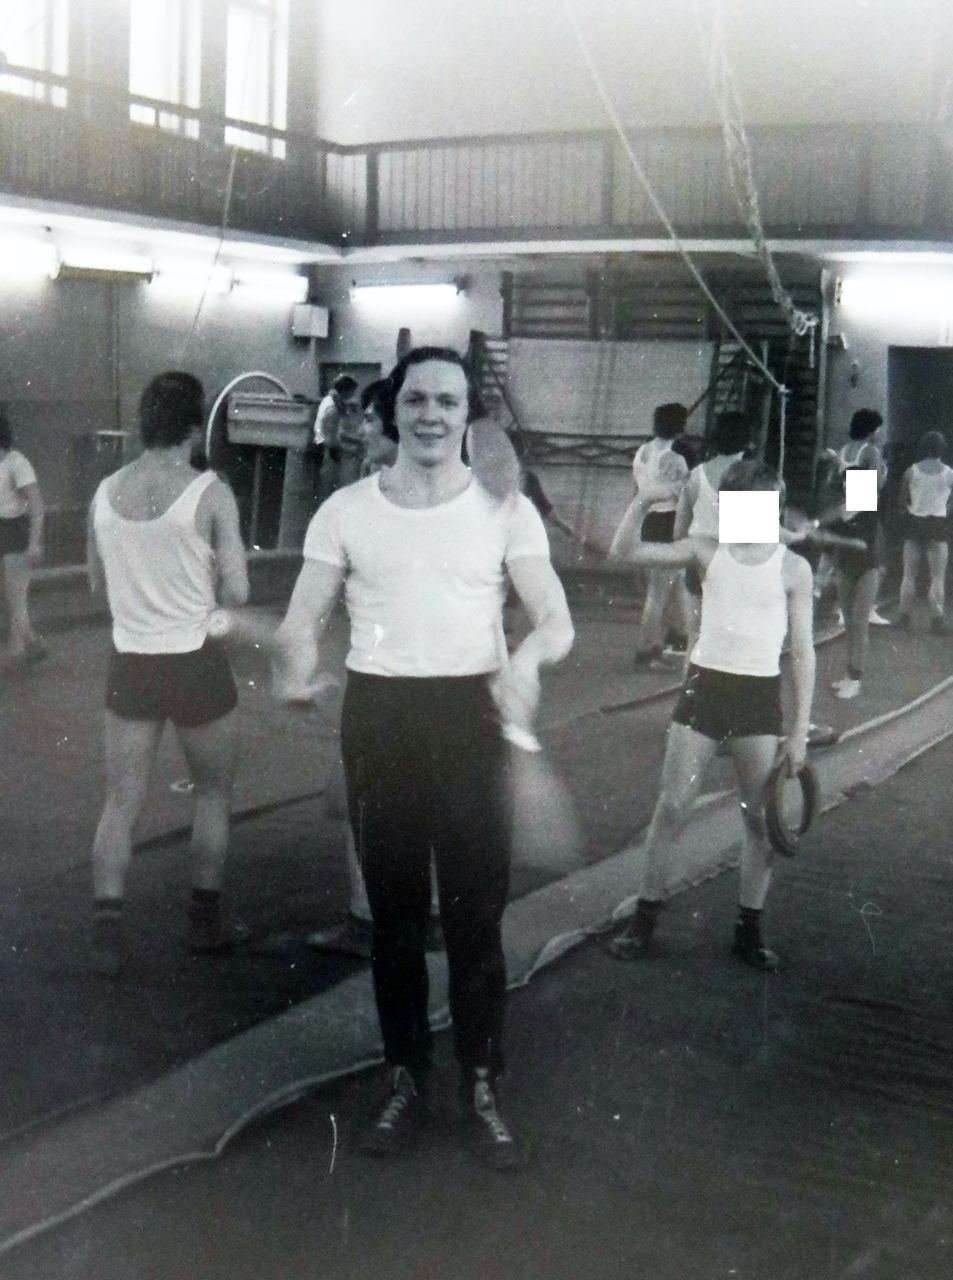 Михаил Жуков во время тренировки в Государственном училище циркового и эстрадного искусства, 1980 год. Фото предоставлено Александром Жуковым